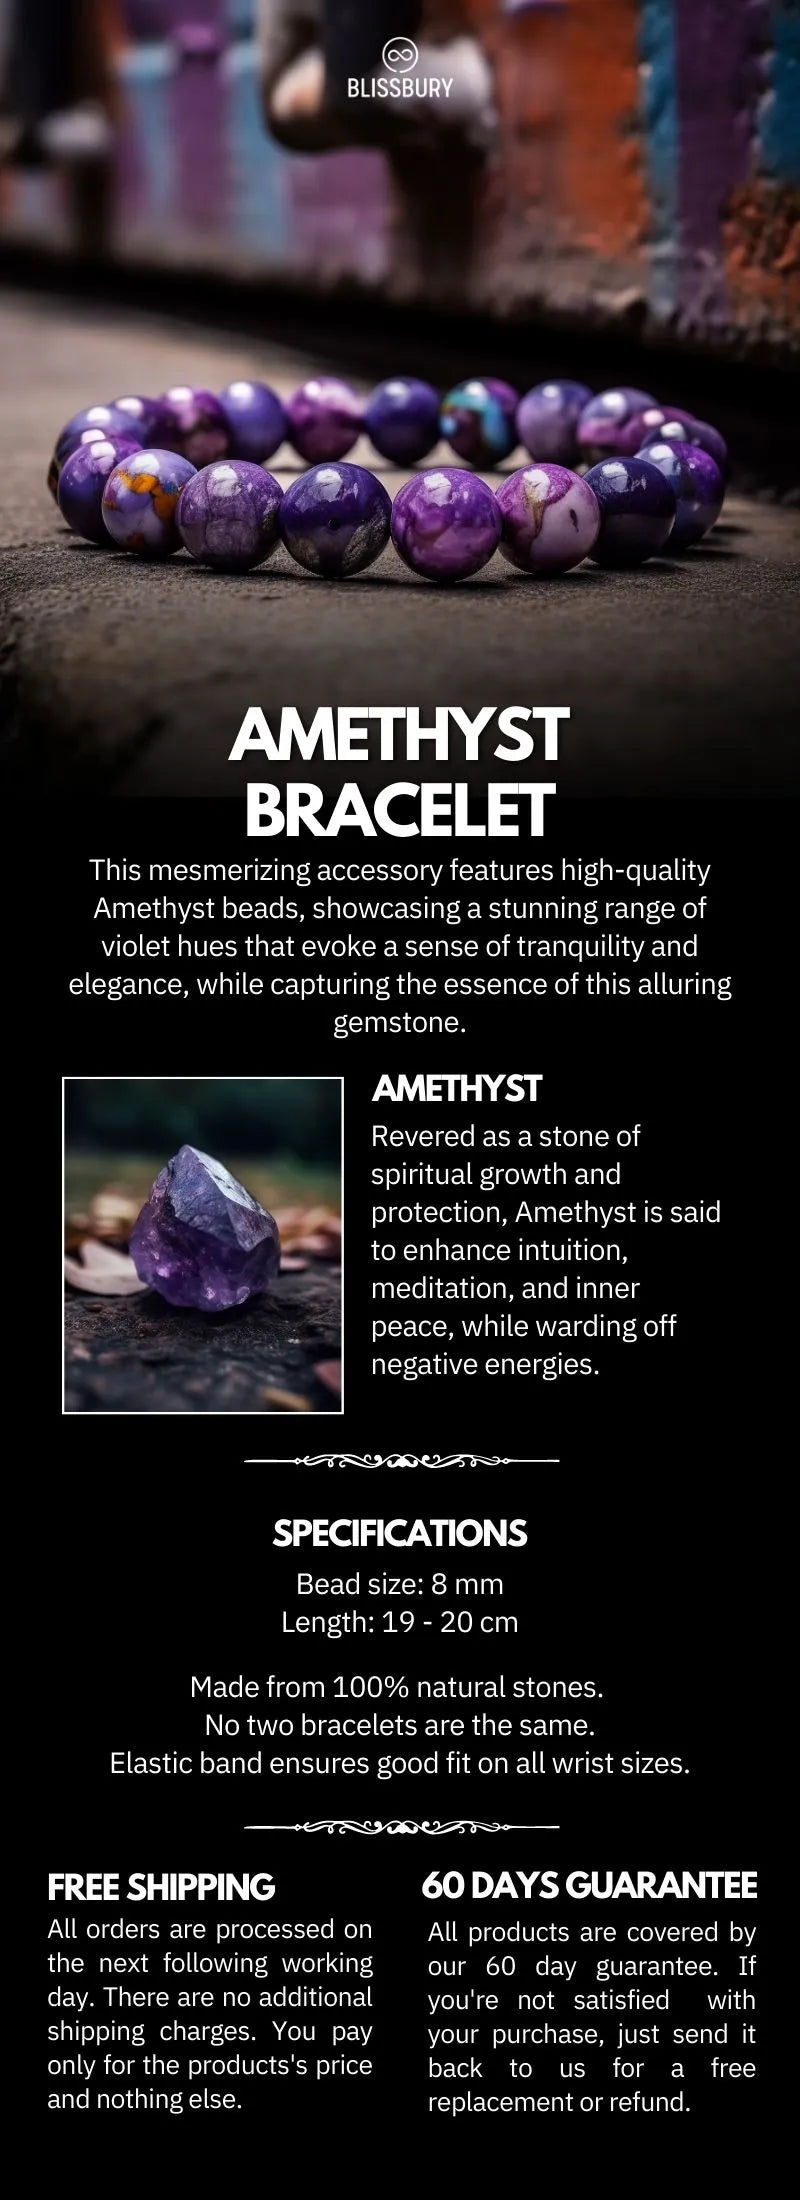 Benefits of wearing an Amethyst Bracelet - YouTube